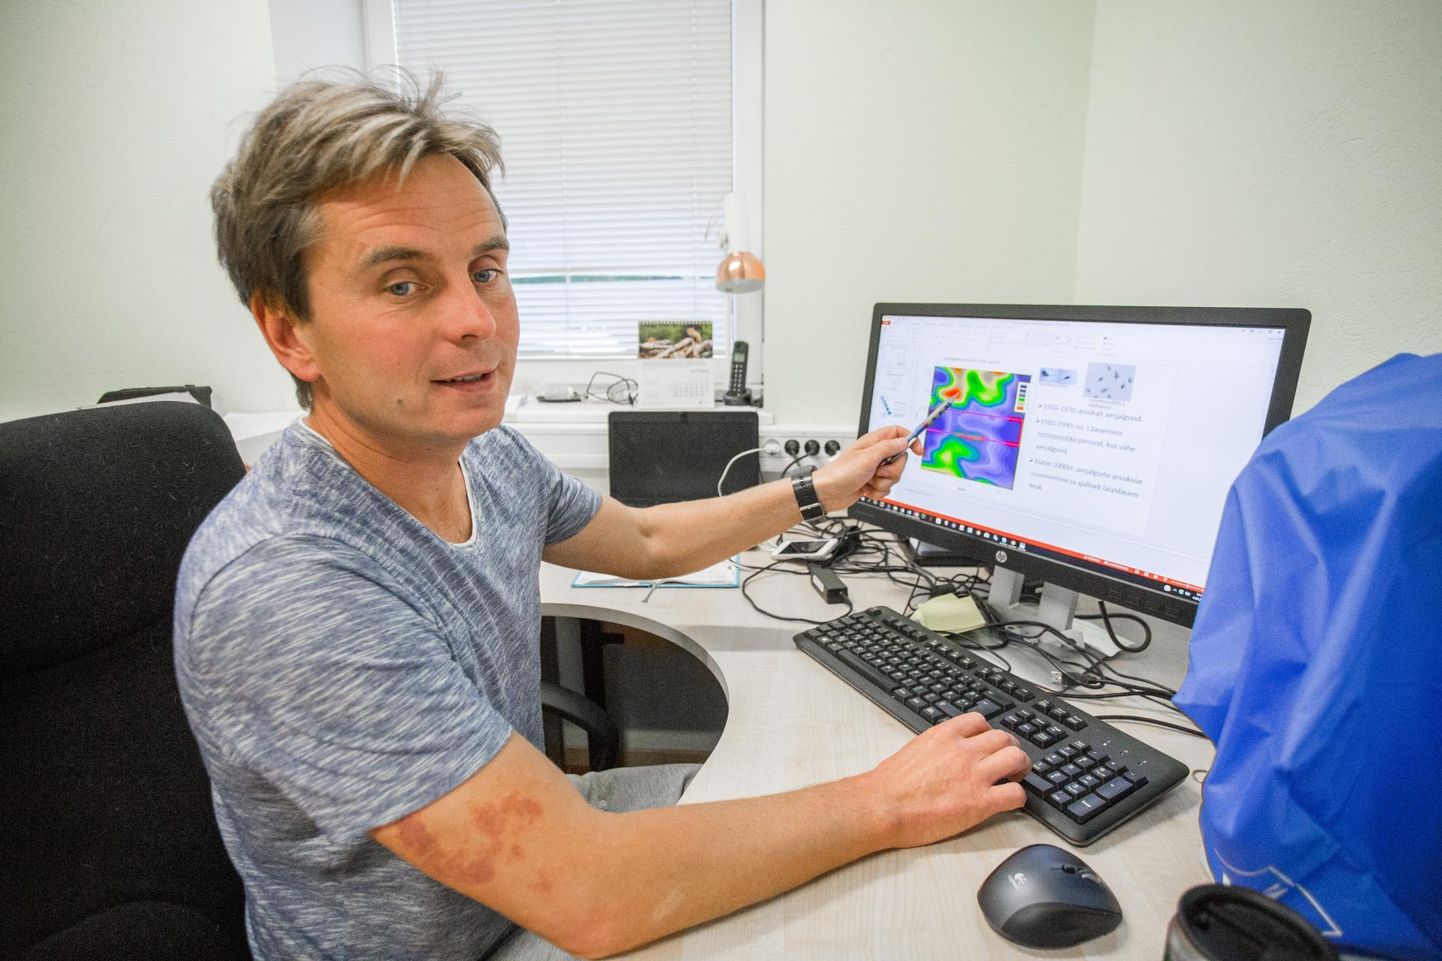 Eesti mereinstituudi kalateadlane Timo Arula osaleb teadusdoktorite rahvusvahelises uurimisrühmas Ameerika idarannikul Marylandi ülikoolis.